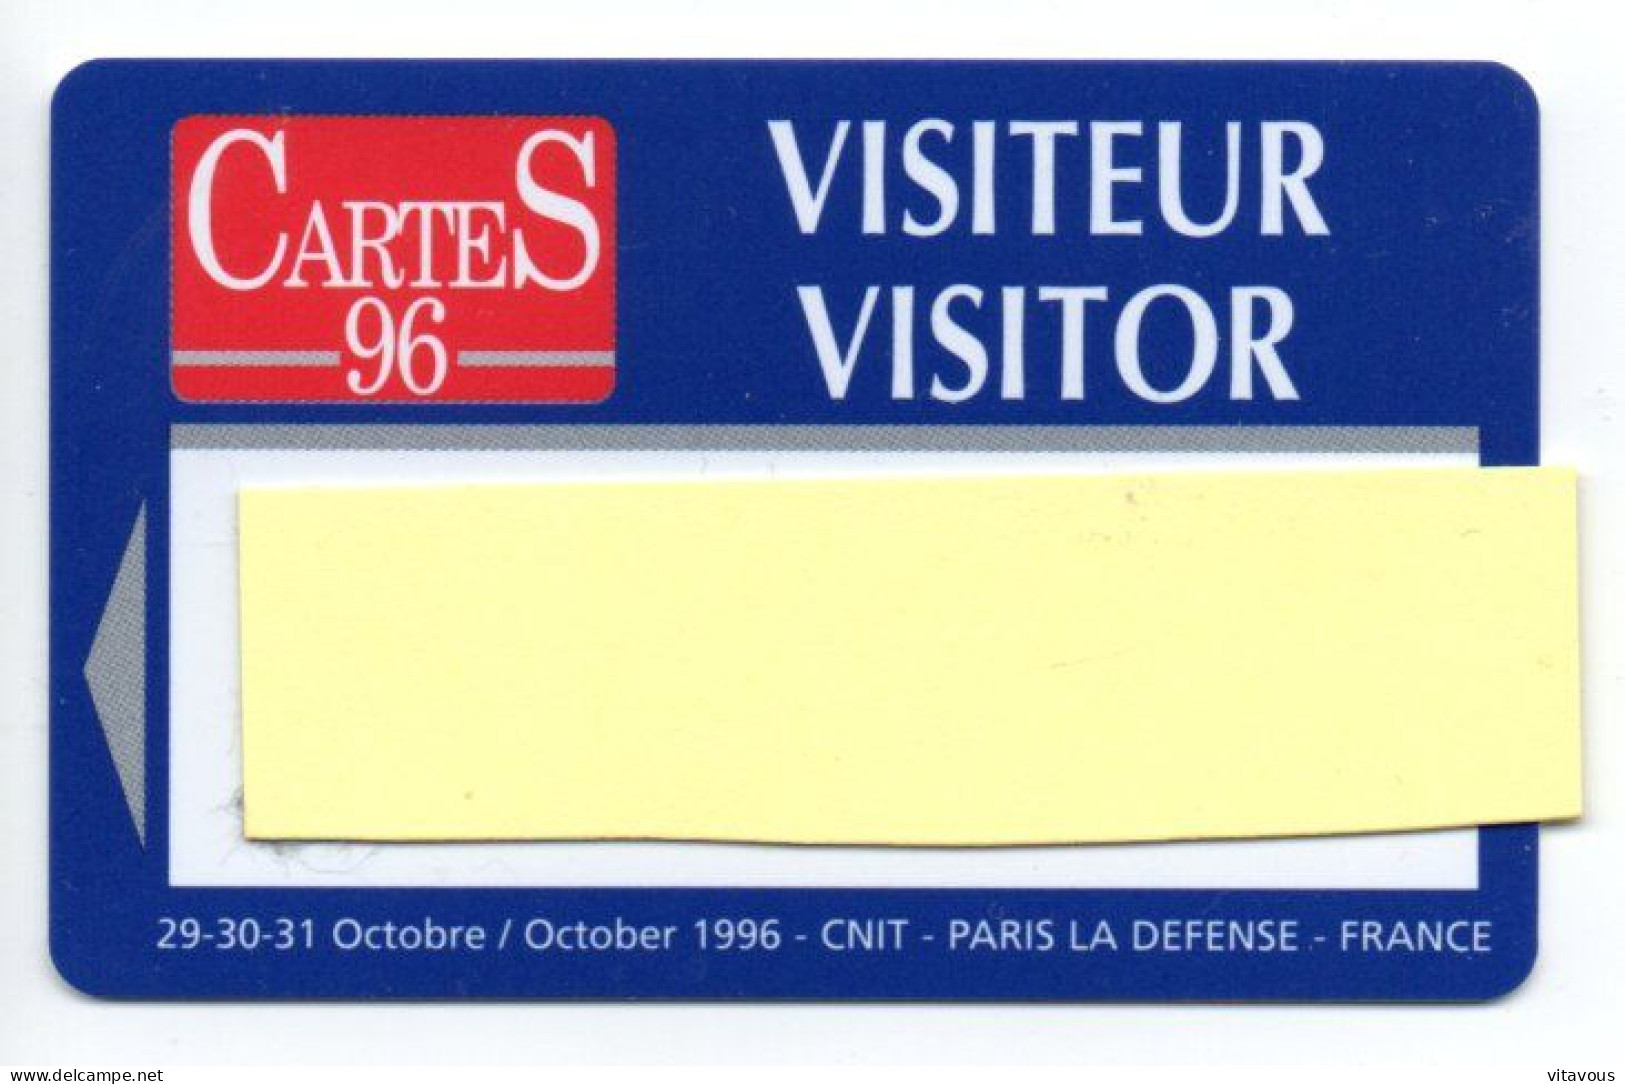 Carte Salon CarteS 96  France Paris Card  Magnétique Karte TBE (F 616) - Cartes De Salon Et Démonstration